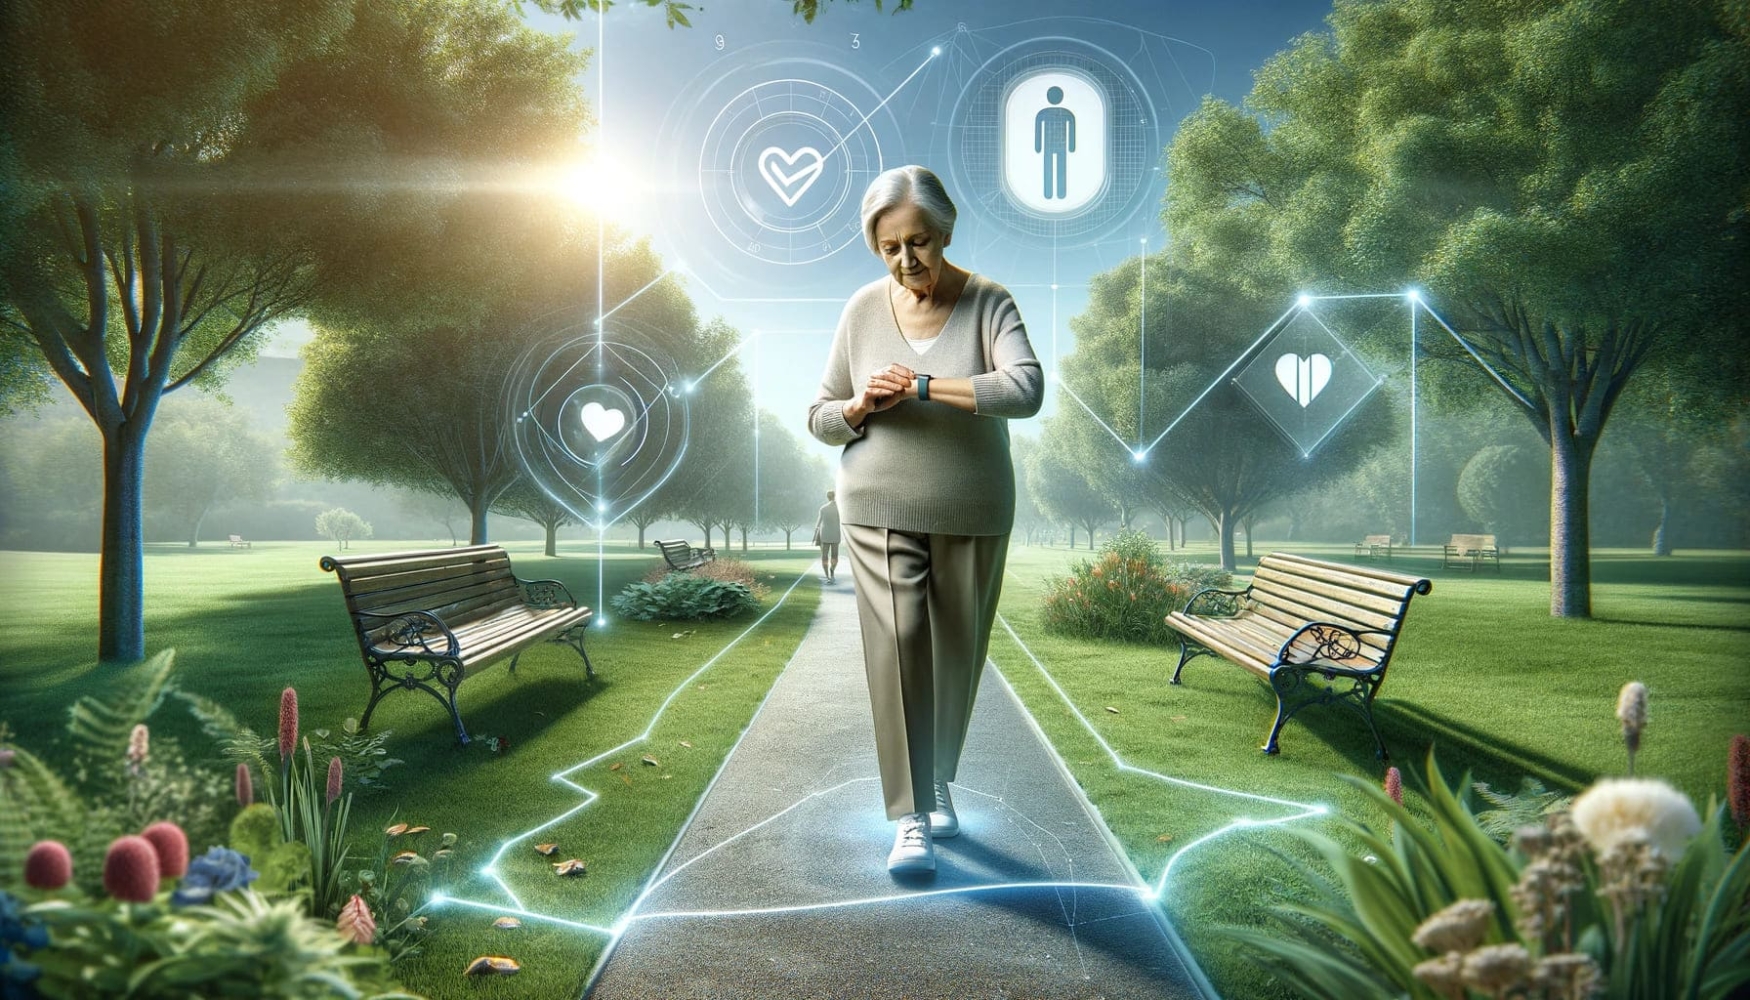 Uma mulher idosa está caminhando em um parque, usando um rastreador GPS no pulso. Ícones digitais flutuam ao seu redor, simbolizando a rede de segurança que a mantém segura com a demência